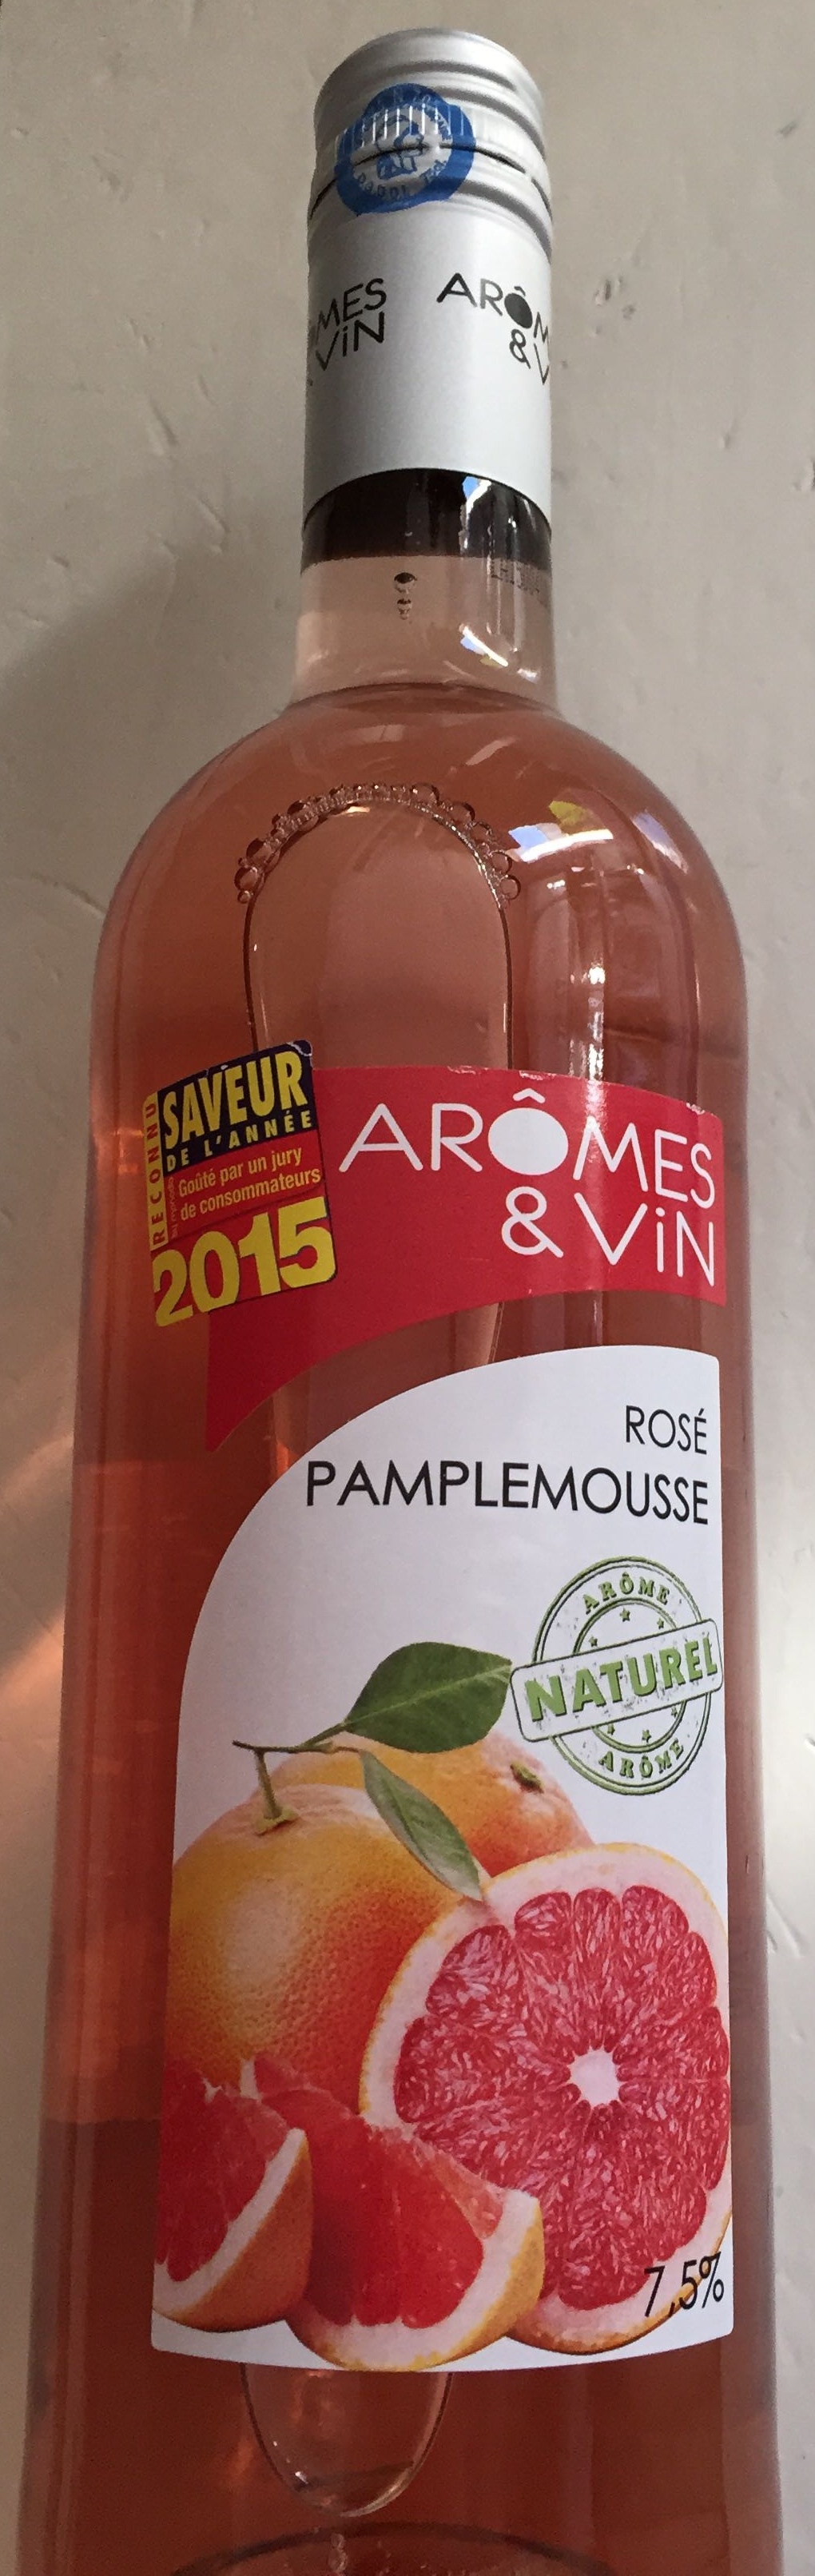 Rosé Pamplemousse - Produit